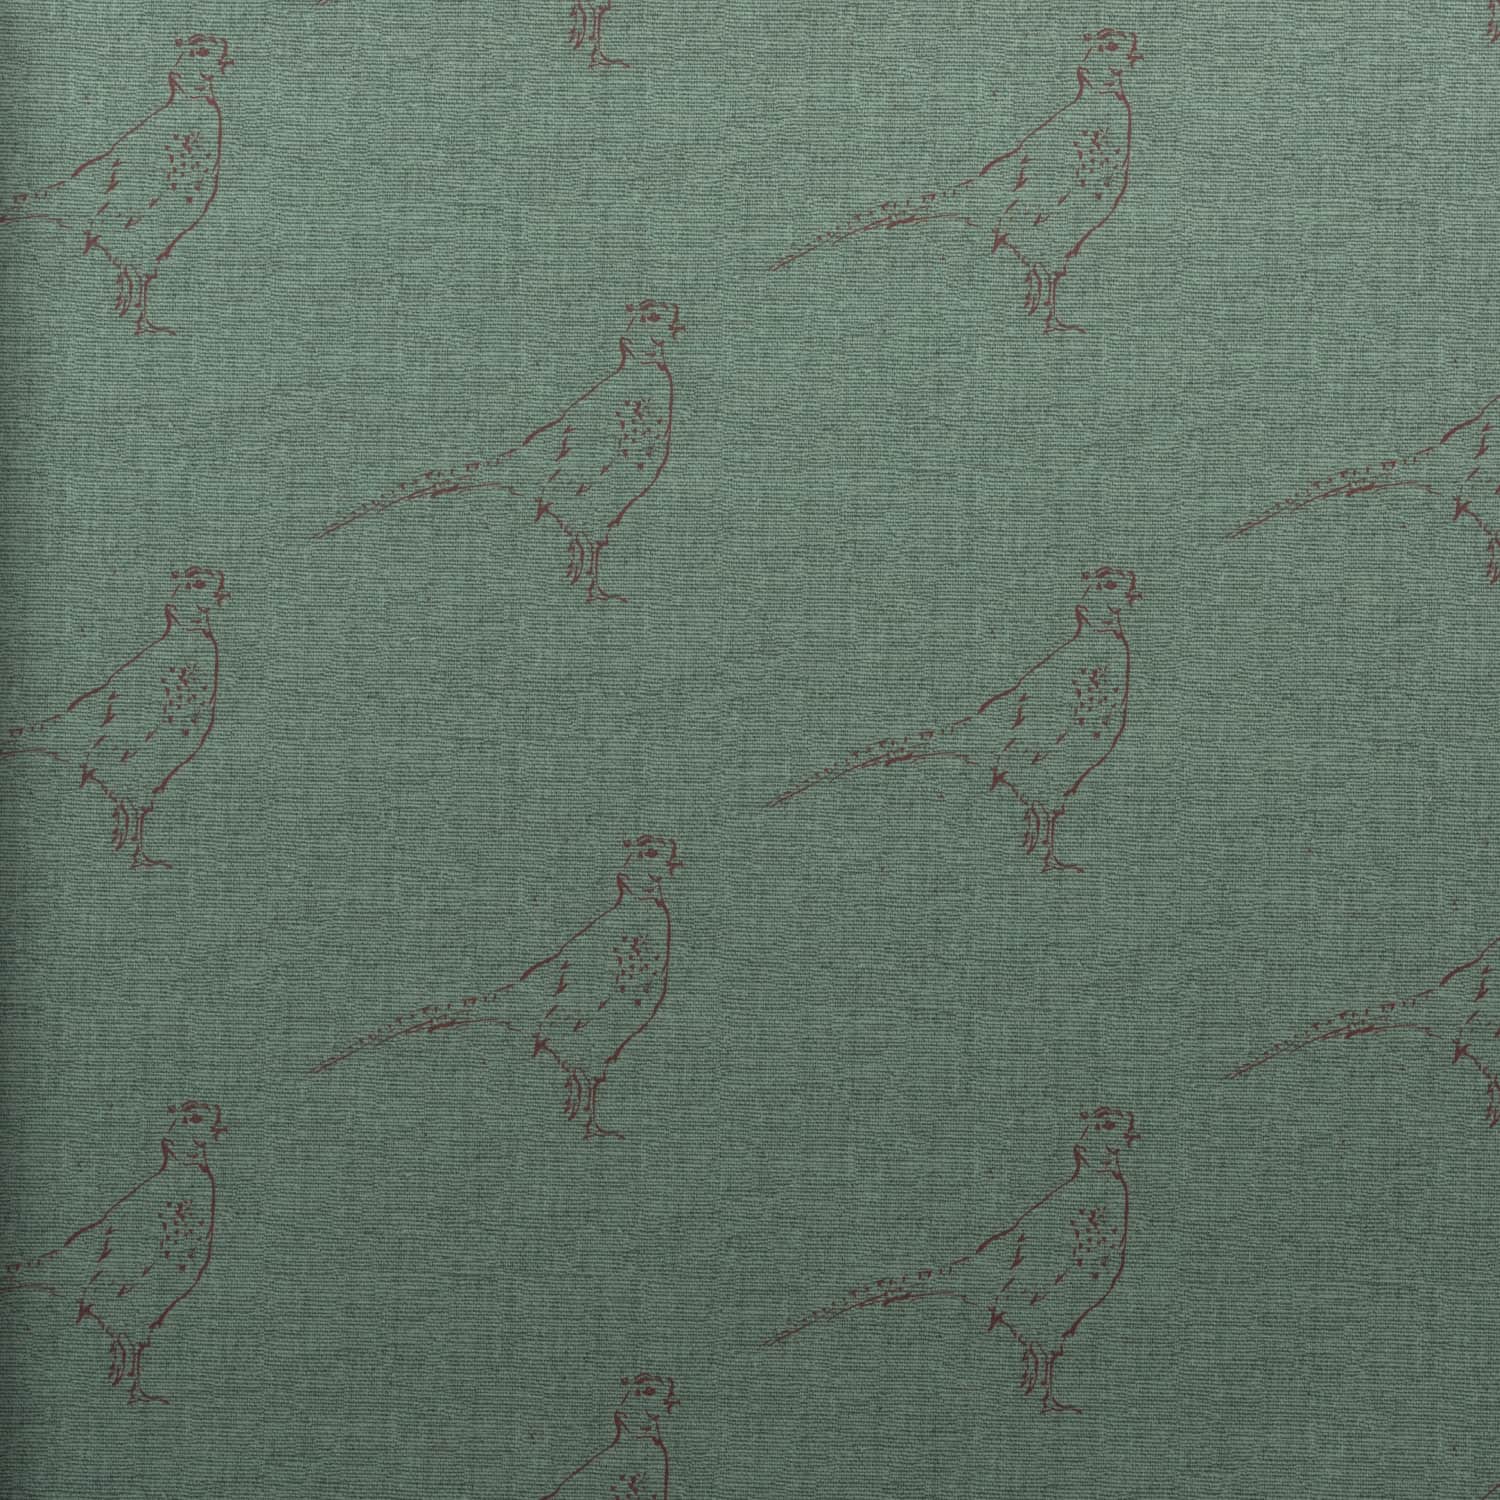 pheasants wallpaper